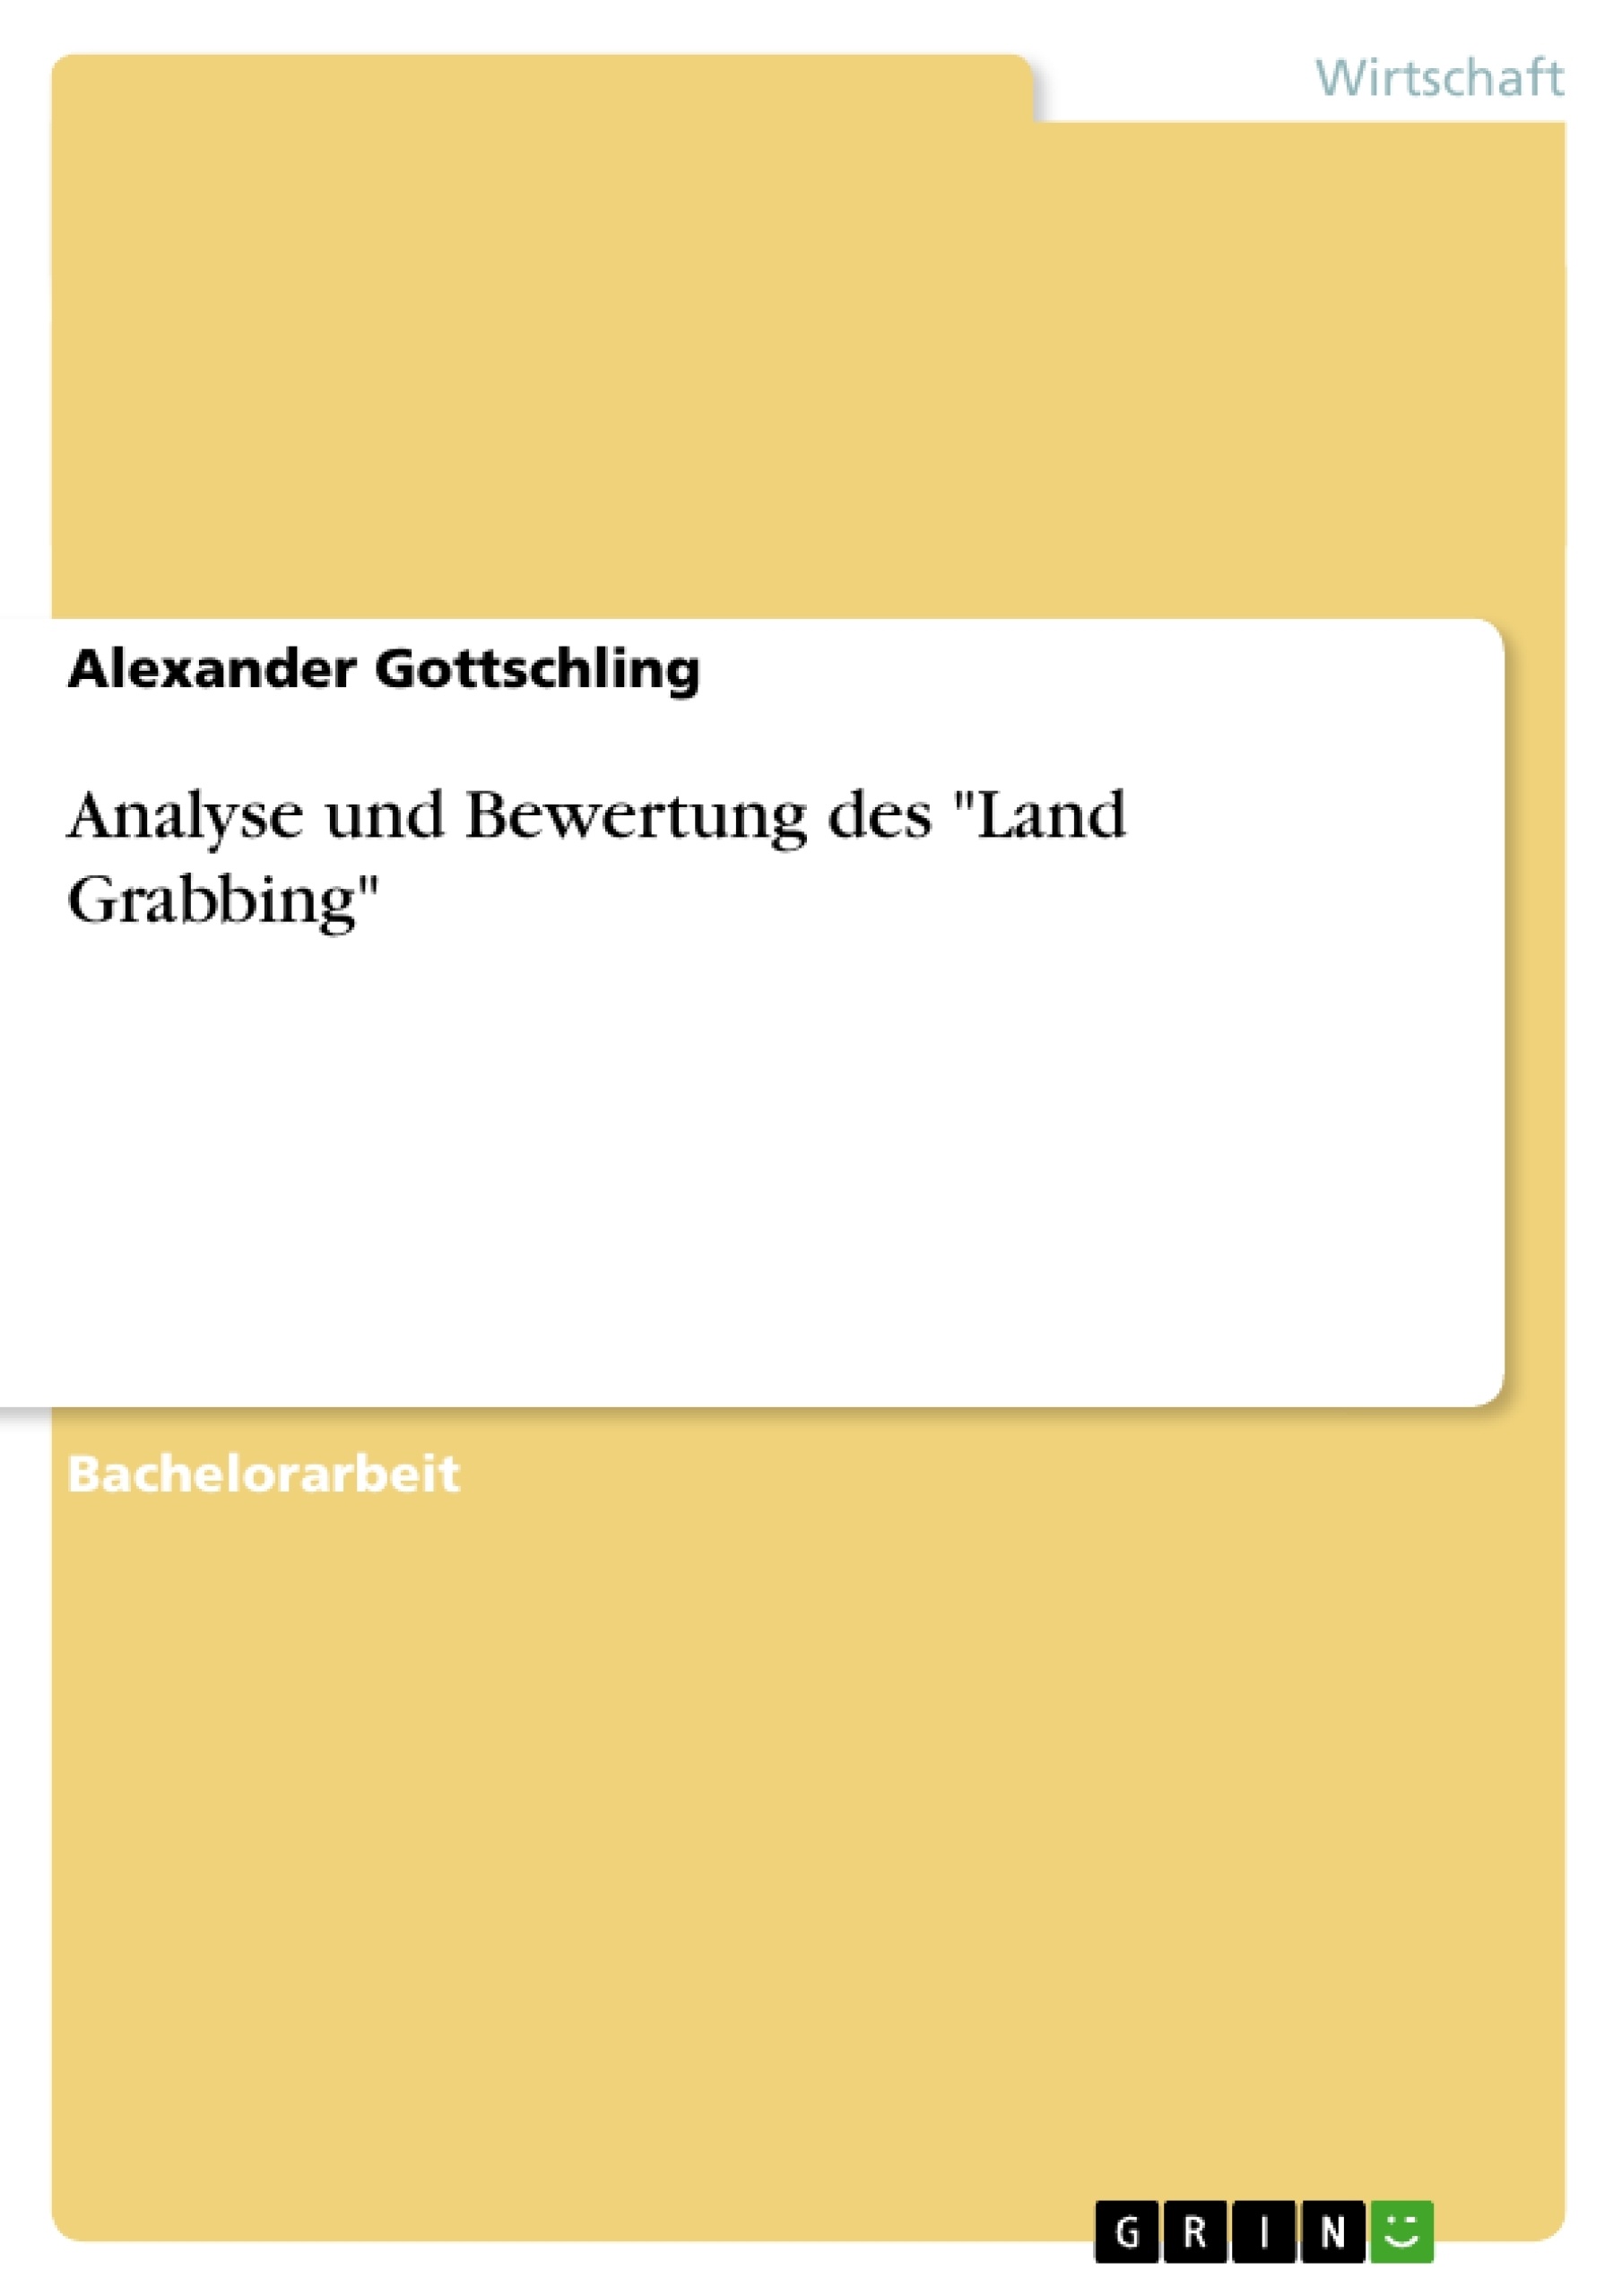 Titel: Analyse und Bewertung des "Land Grabbing"